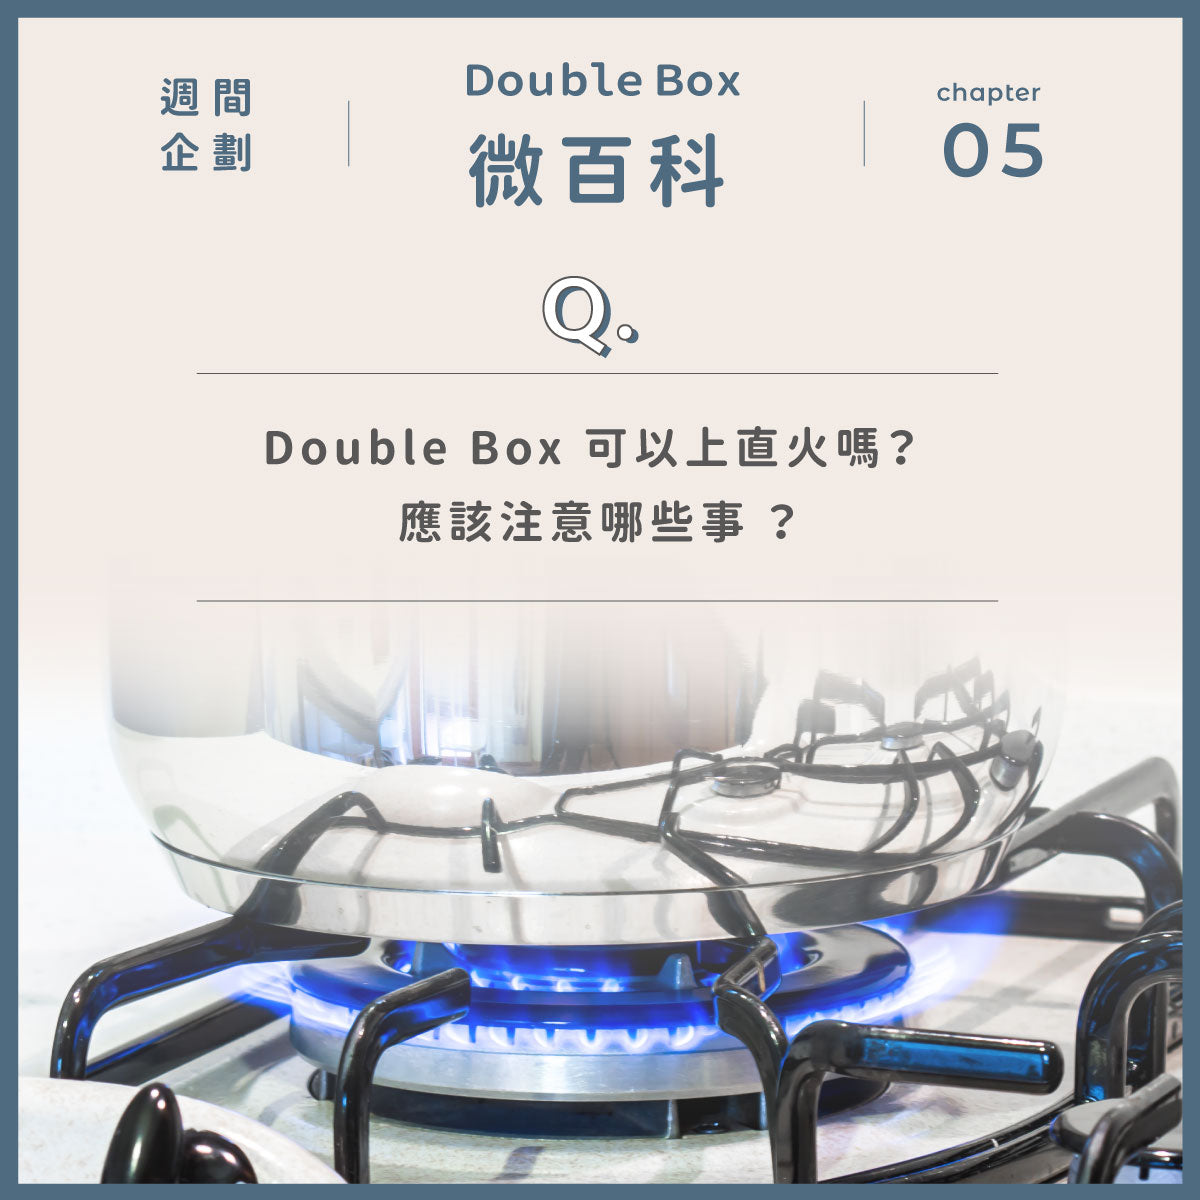 Double Box 可以上直火嗎？